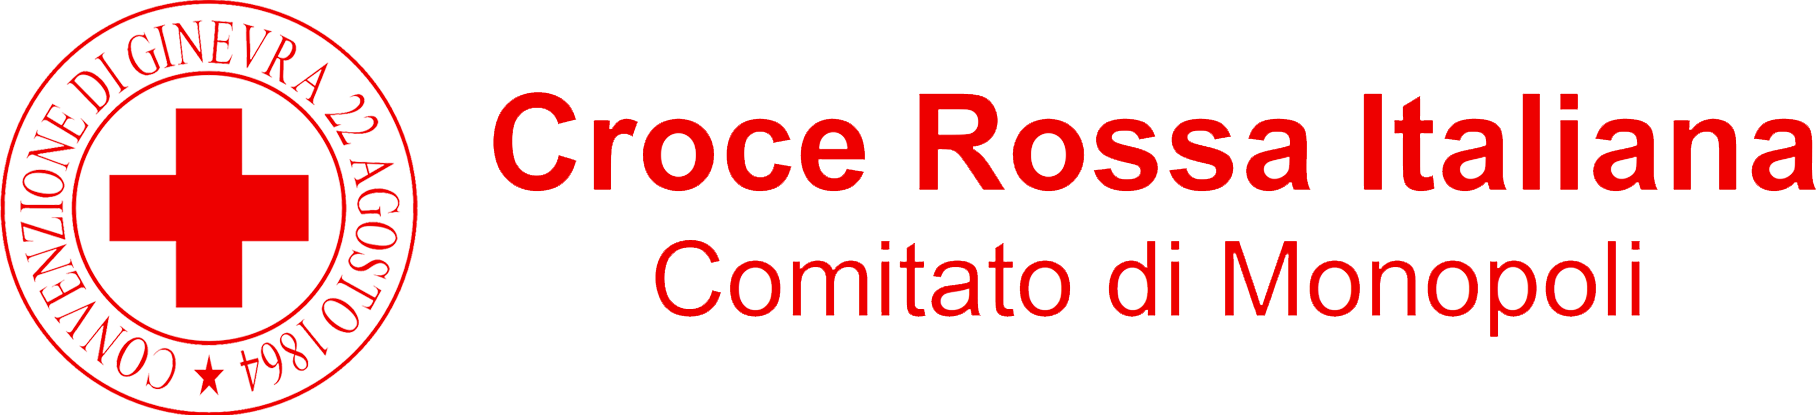 Croce Rossa Italiana - Comitato di Monopoli